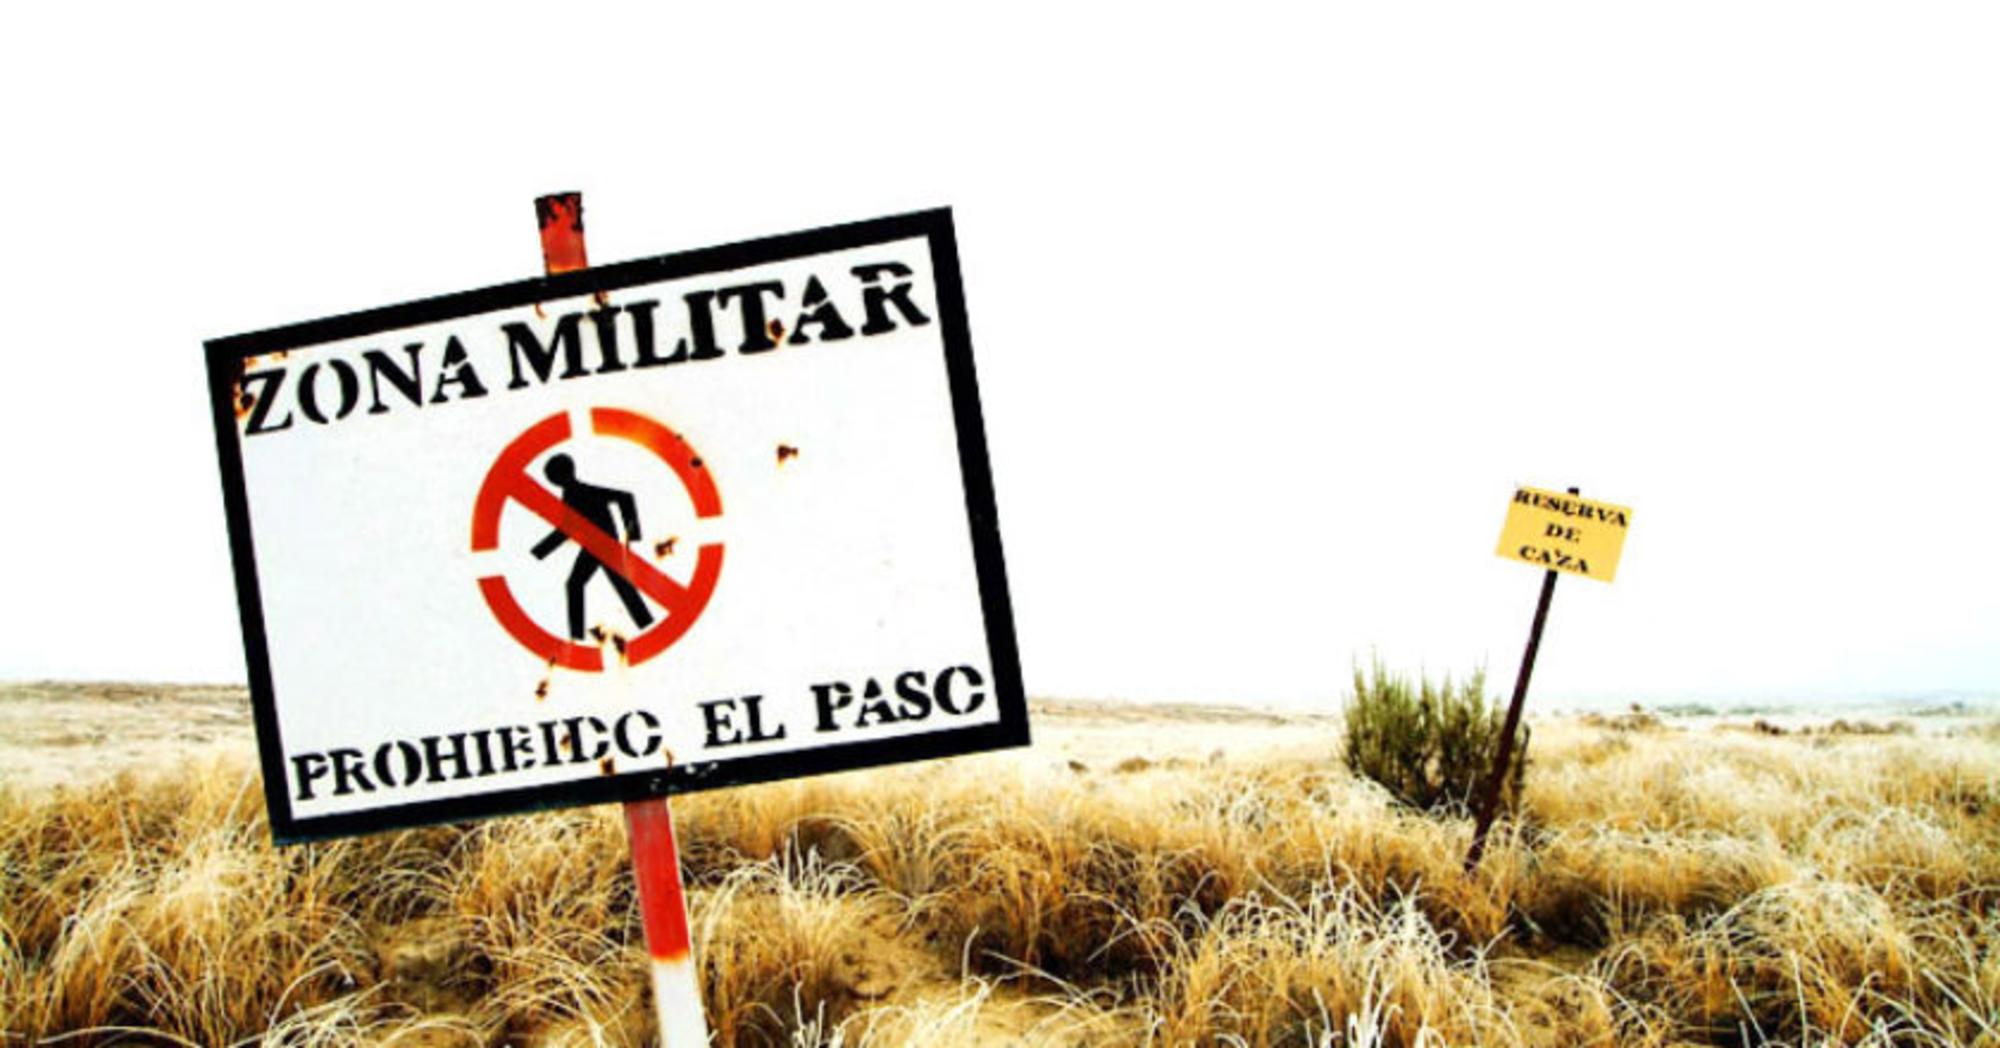 Zona militar: prohibido el paso